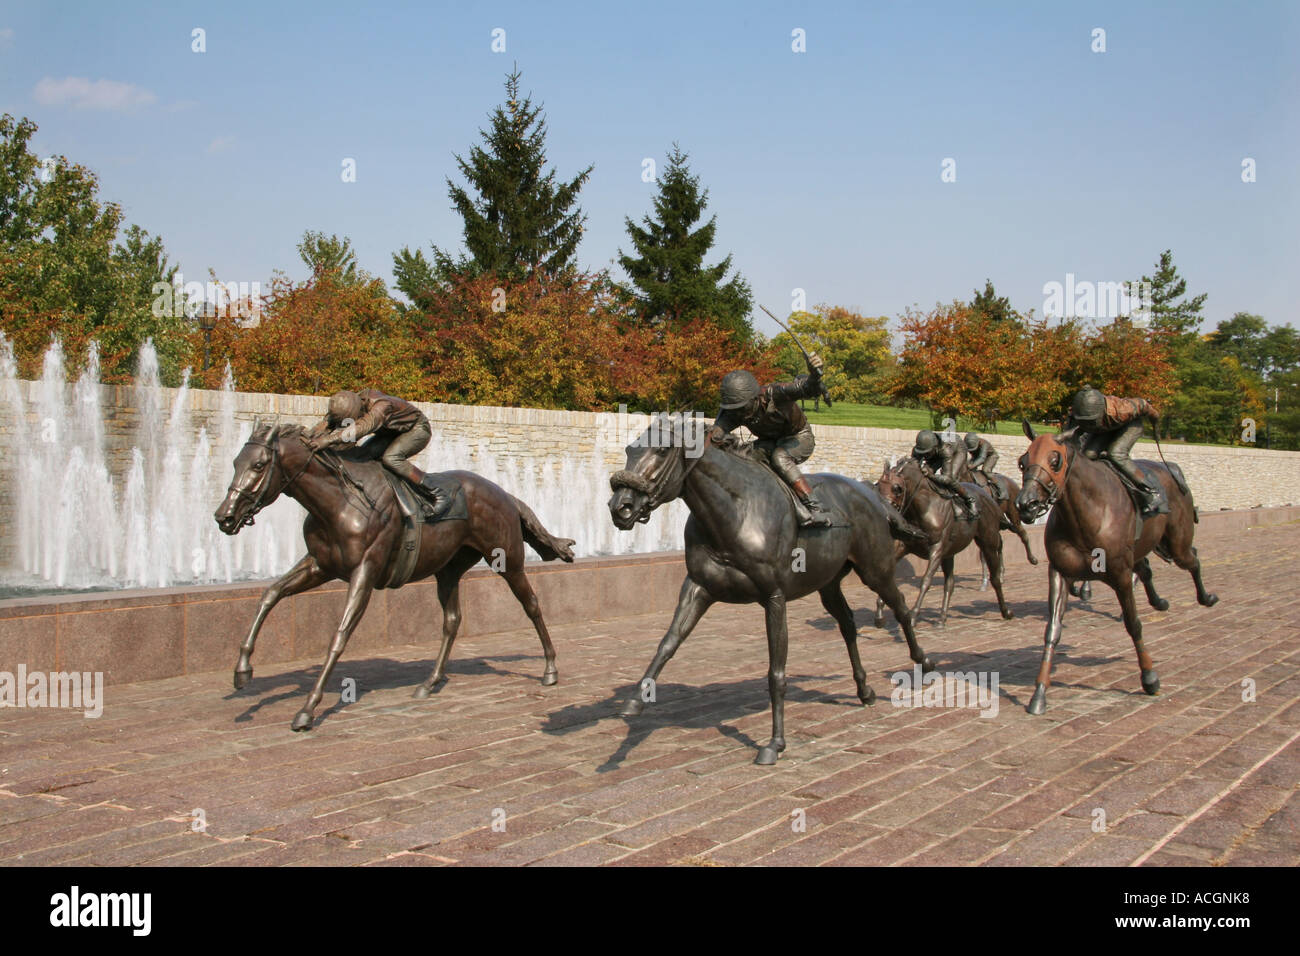 Thoroughbred Park Lexington Kentucky statue in bronzo di ricreare un cavallo di razza Foto Stock